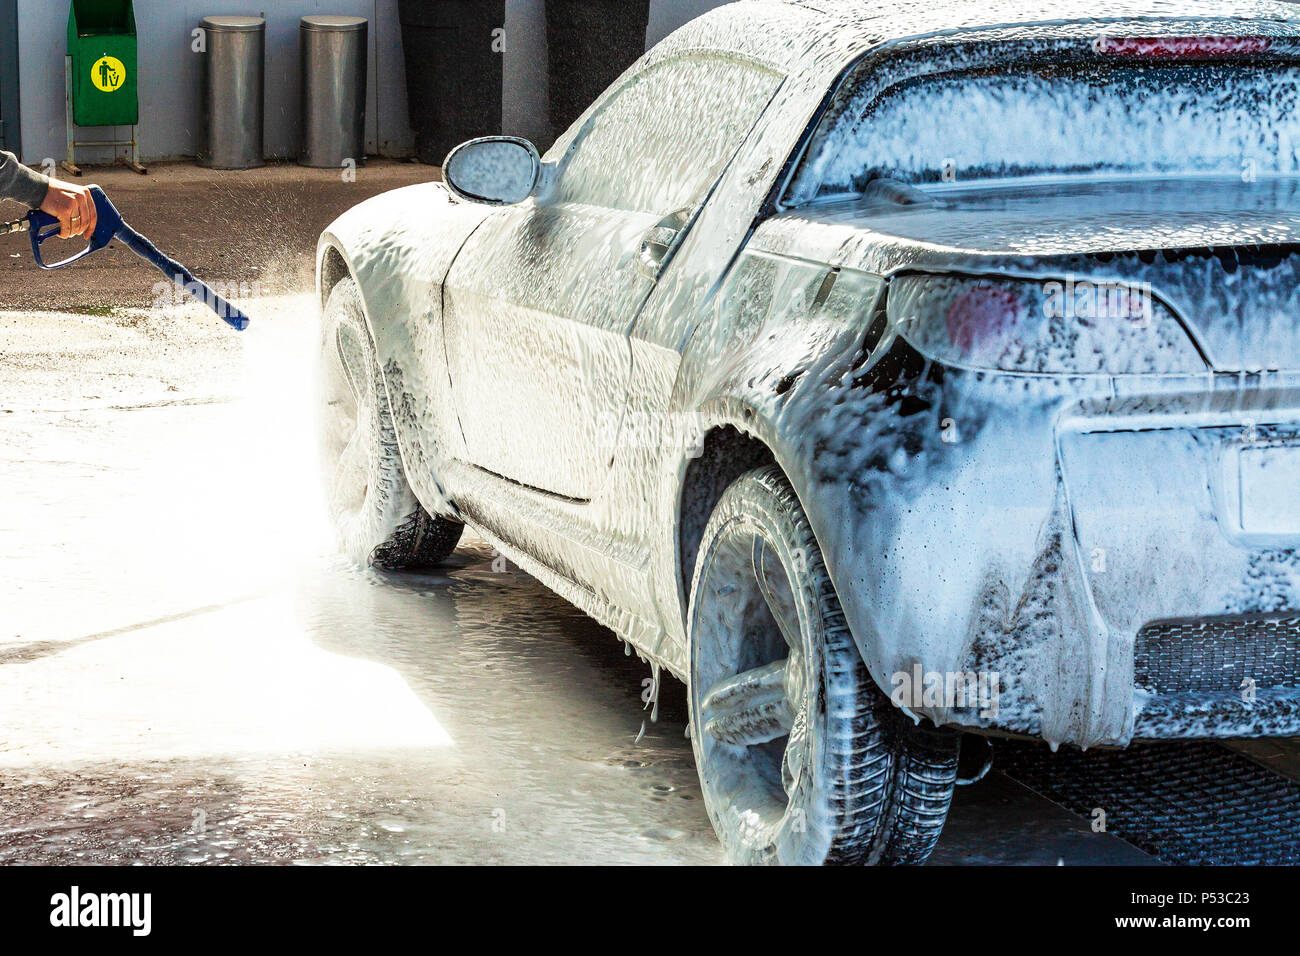 Ein mann wäscht sein auto mit schaum in einer  selbstbedienungsautowaschanlage mit rädern und reifen in der nähe